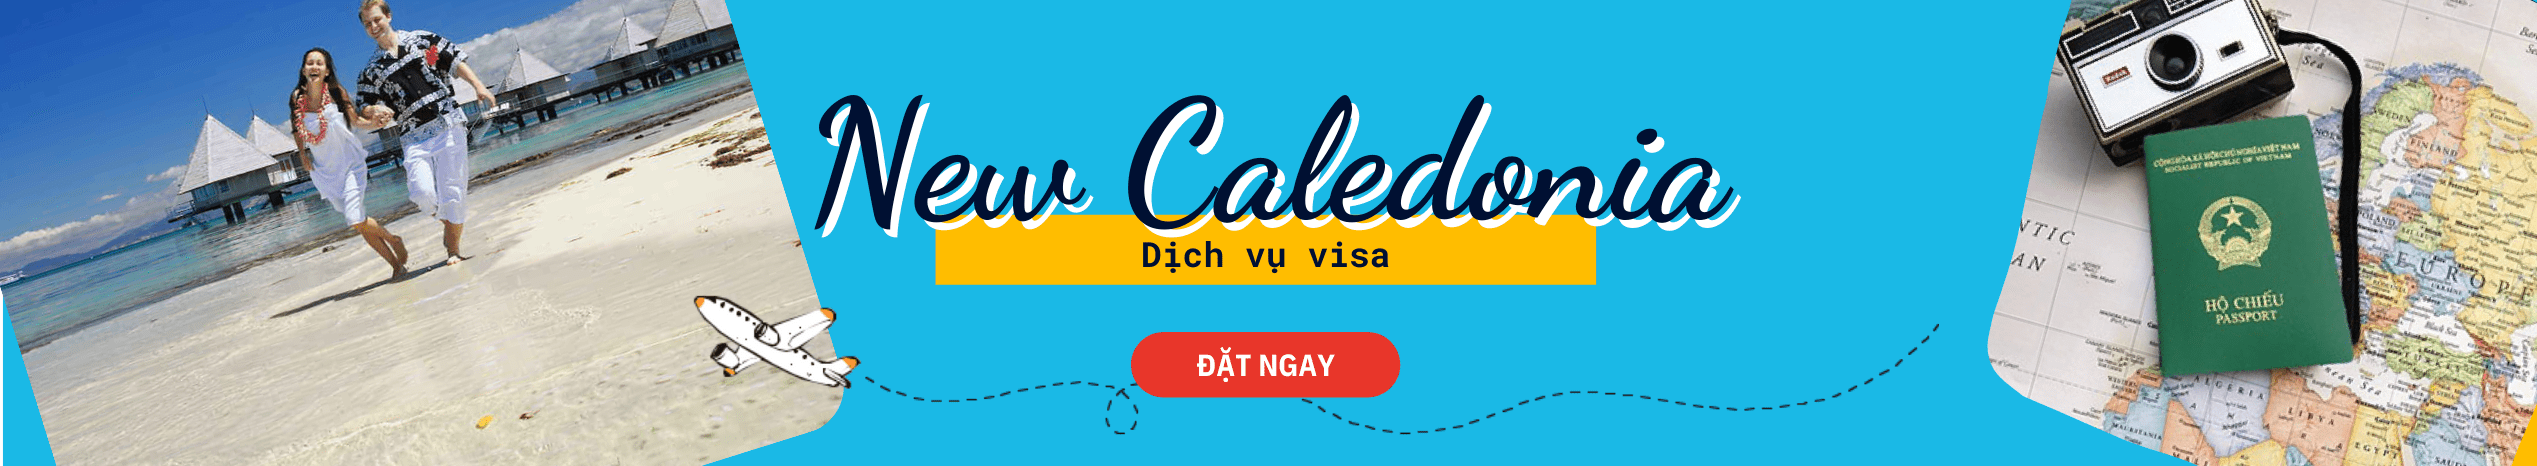 Dịch vụ xin Visa New Caledonia du lịch & công tác